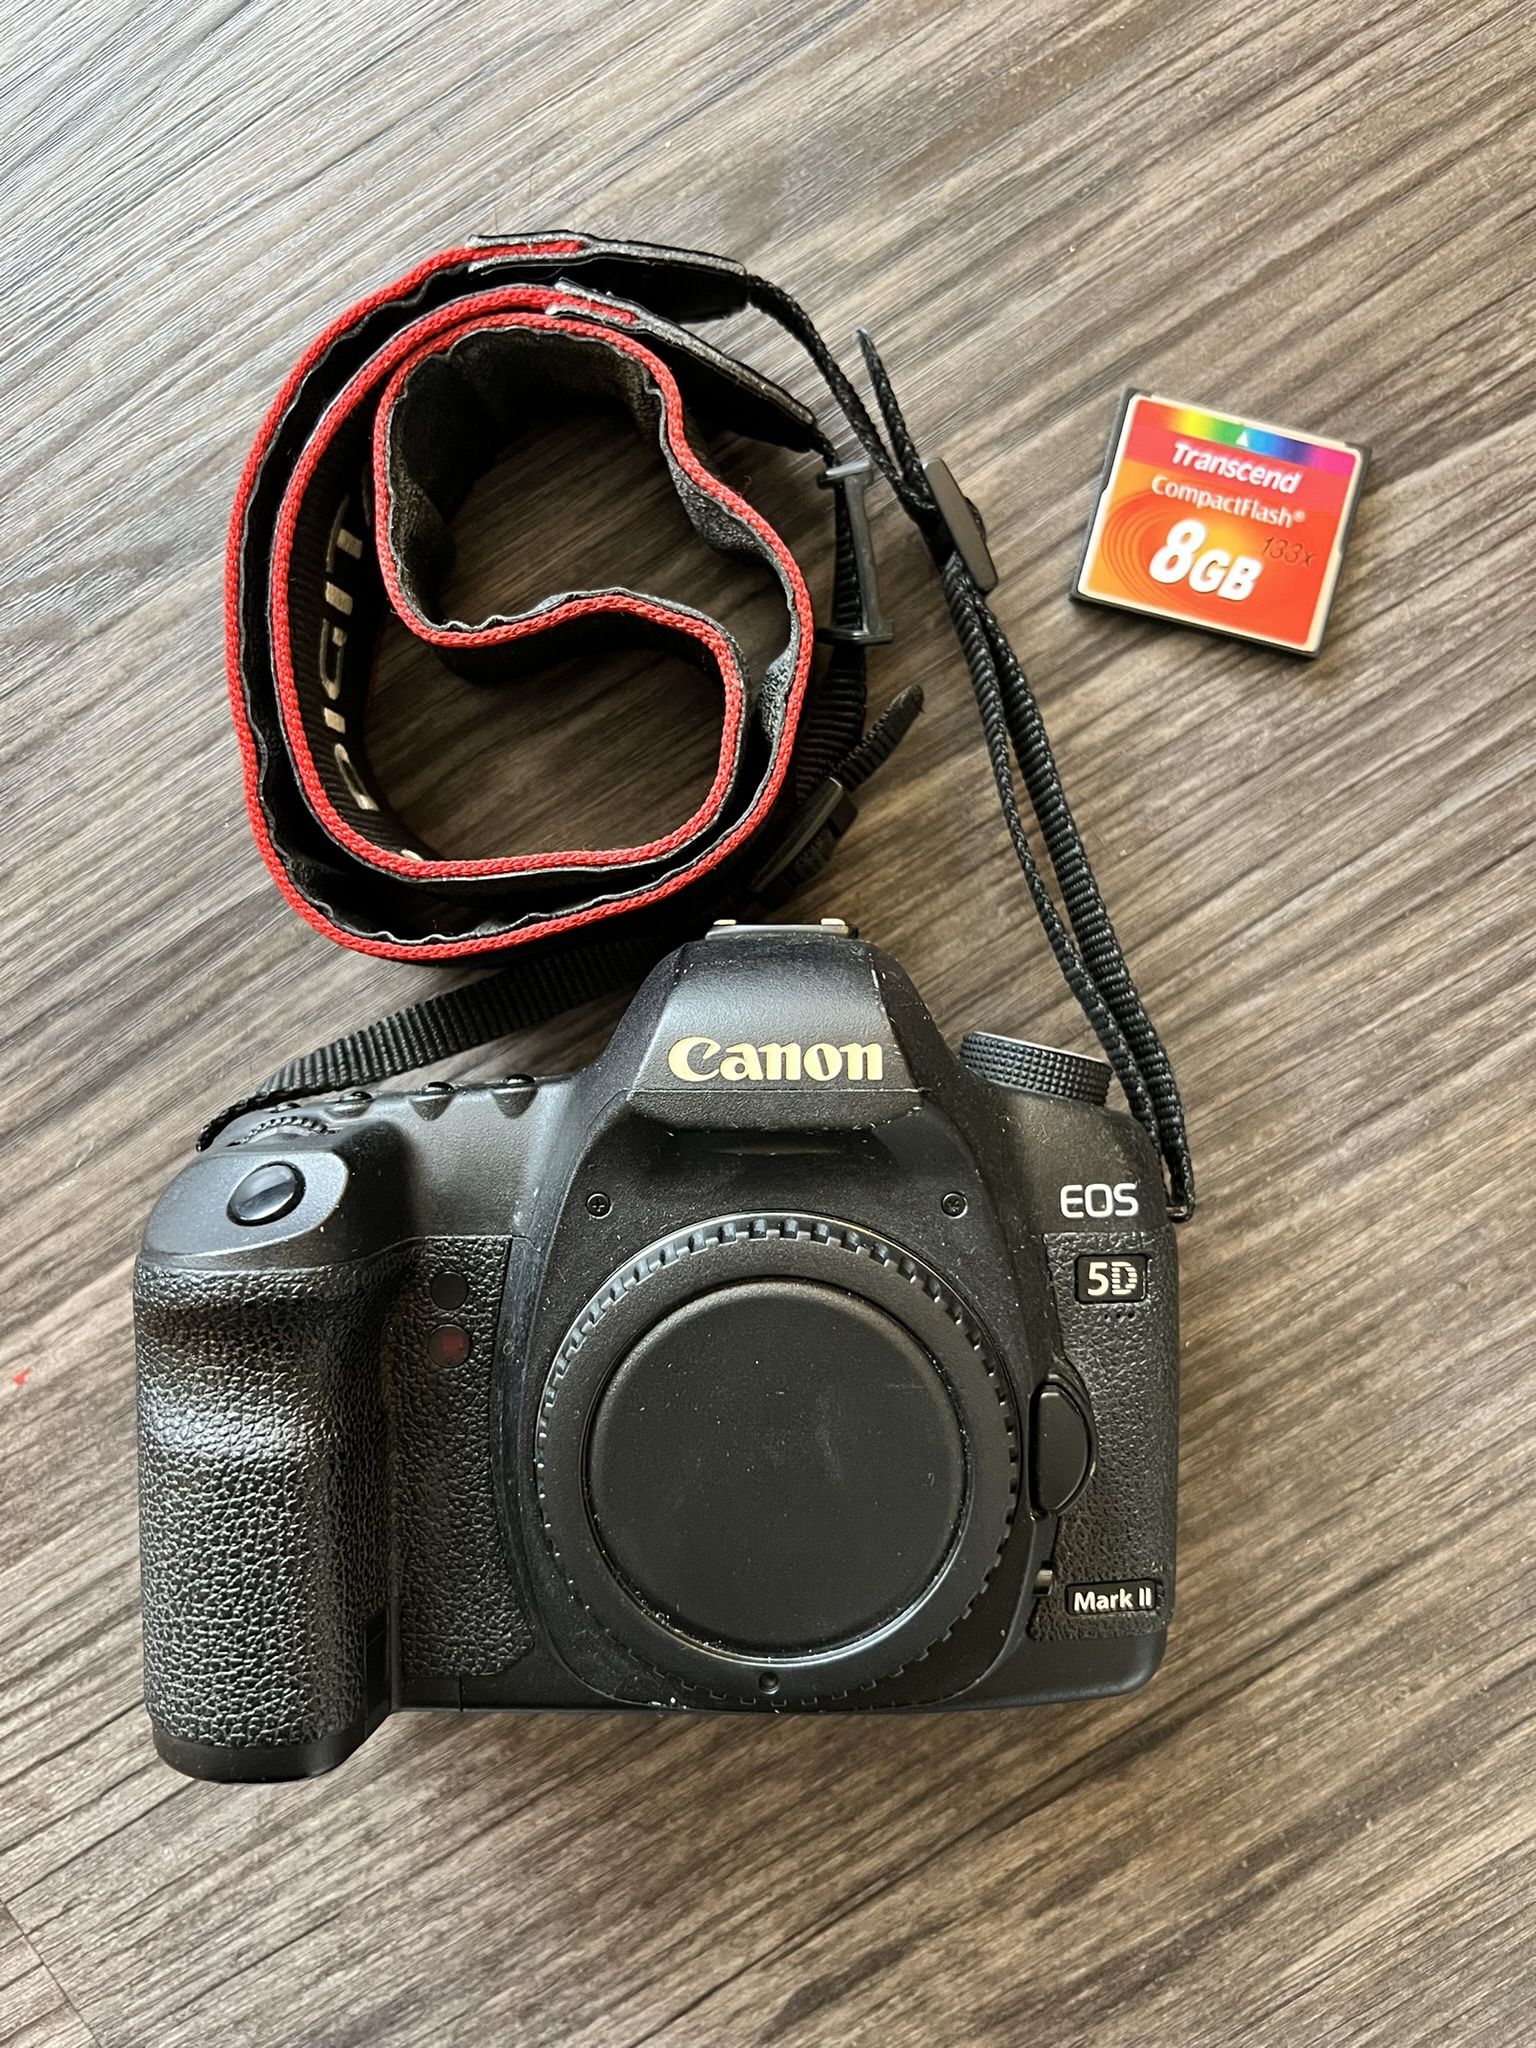 Canon 5D Mark II DSLR Full Frame Camera Body & CF Card